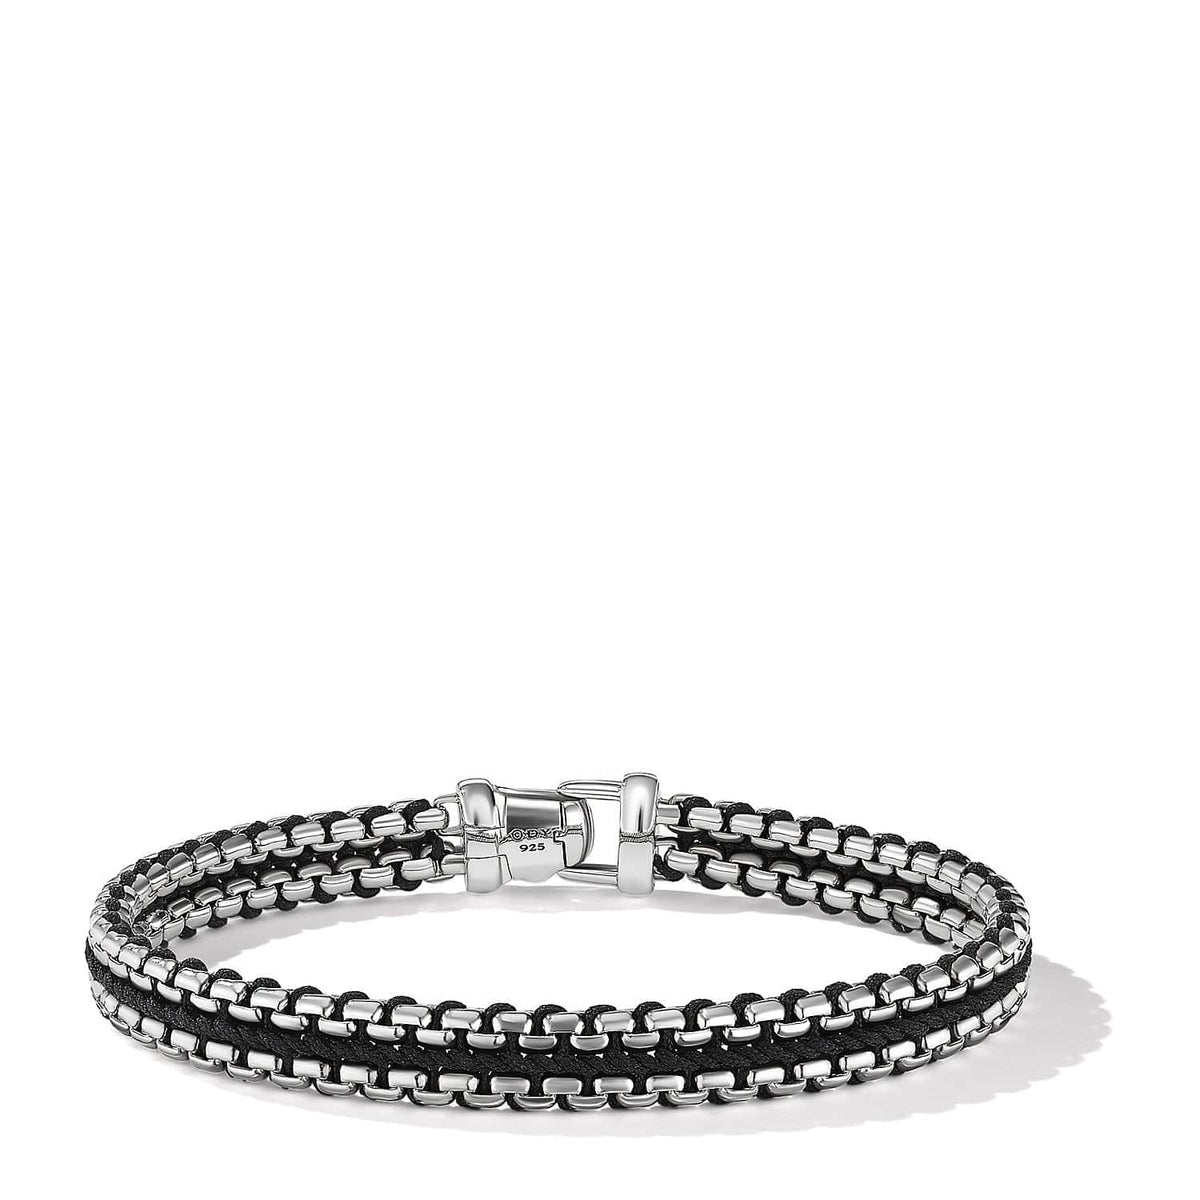 Woven Box Chain Bracelet in Black, Long's Jewelers